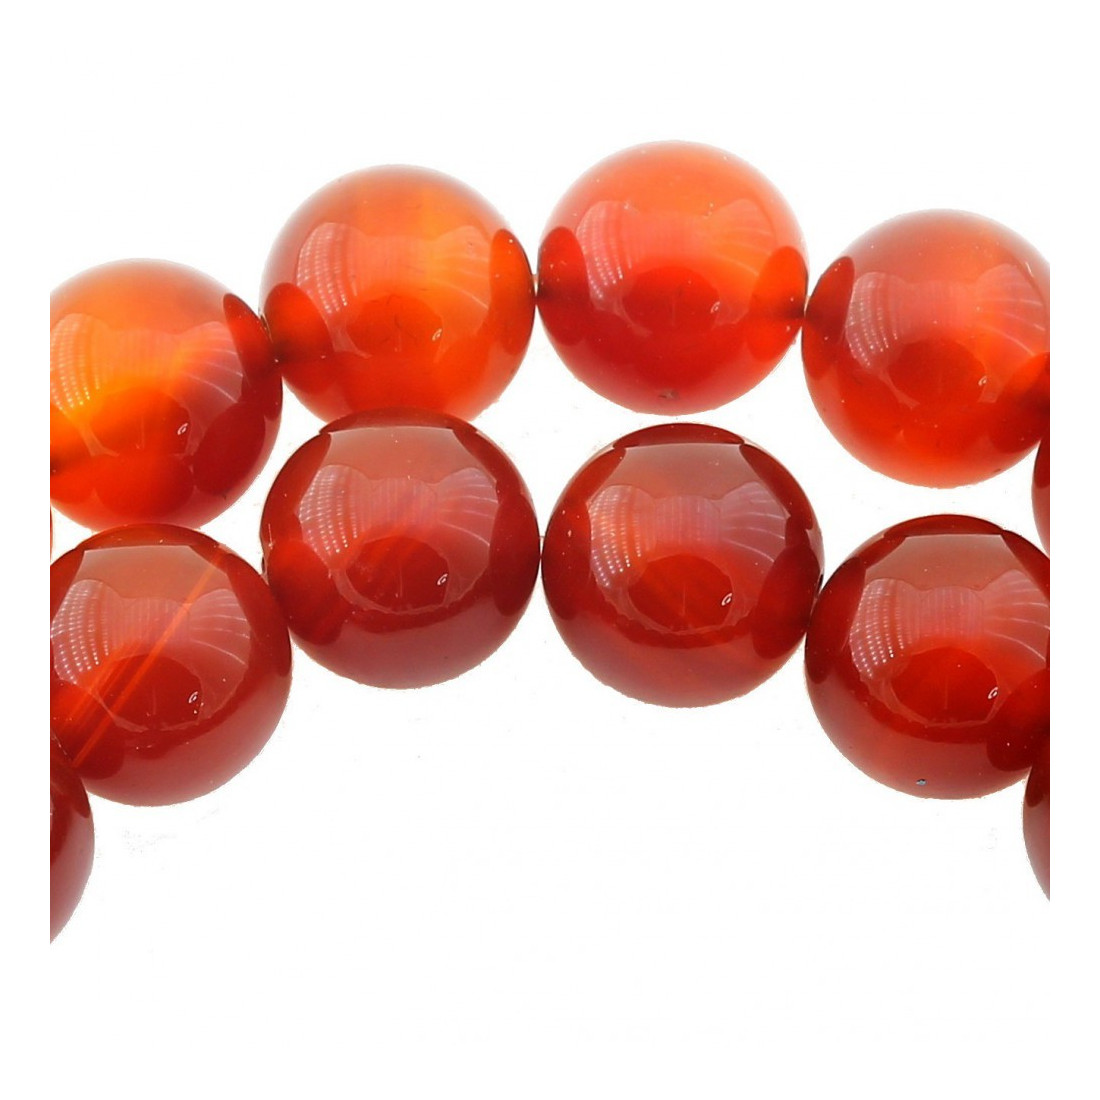 Fil de 64 perles rondes 6mm 6 mm en cornaline agate rouge